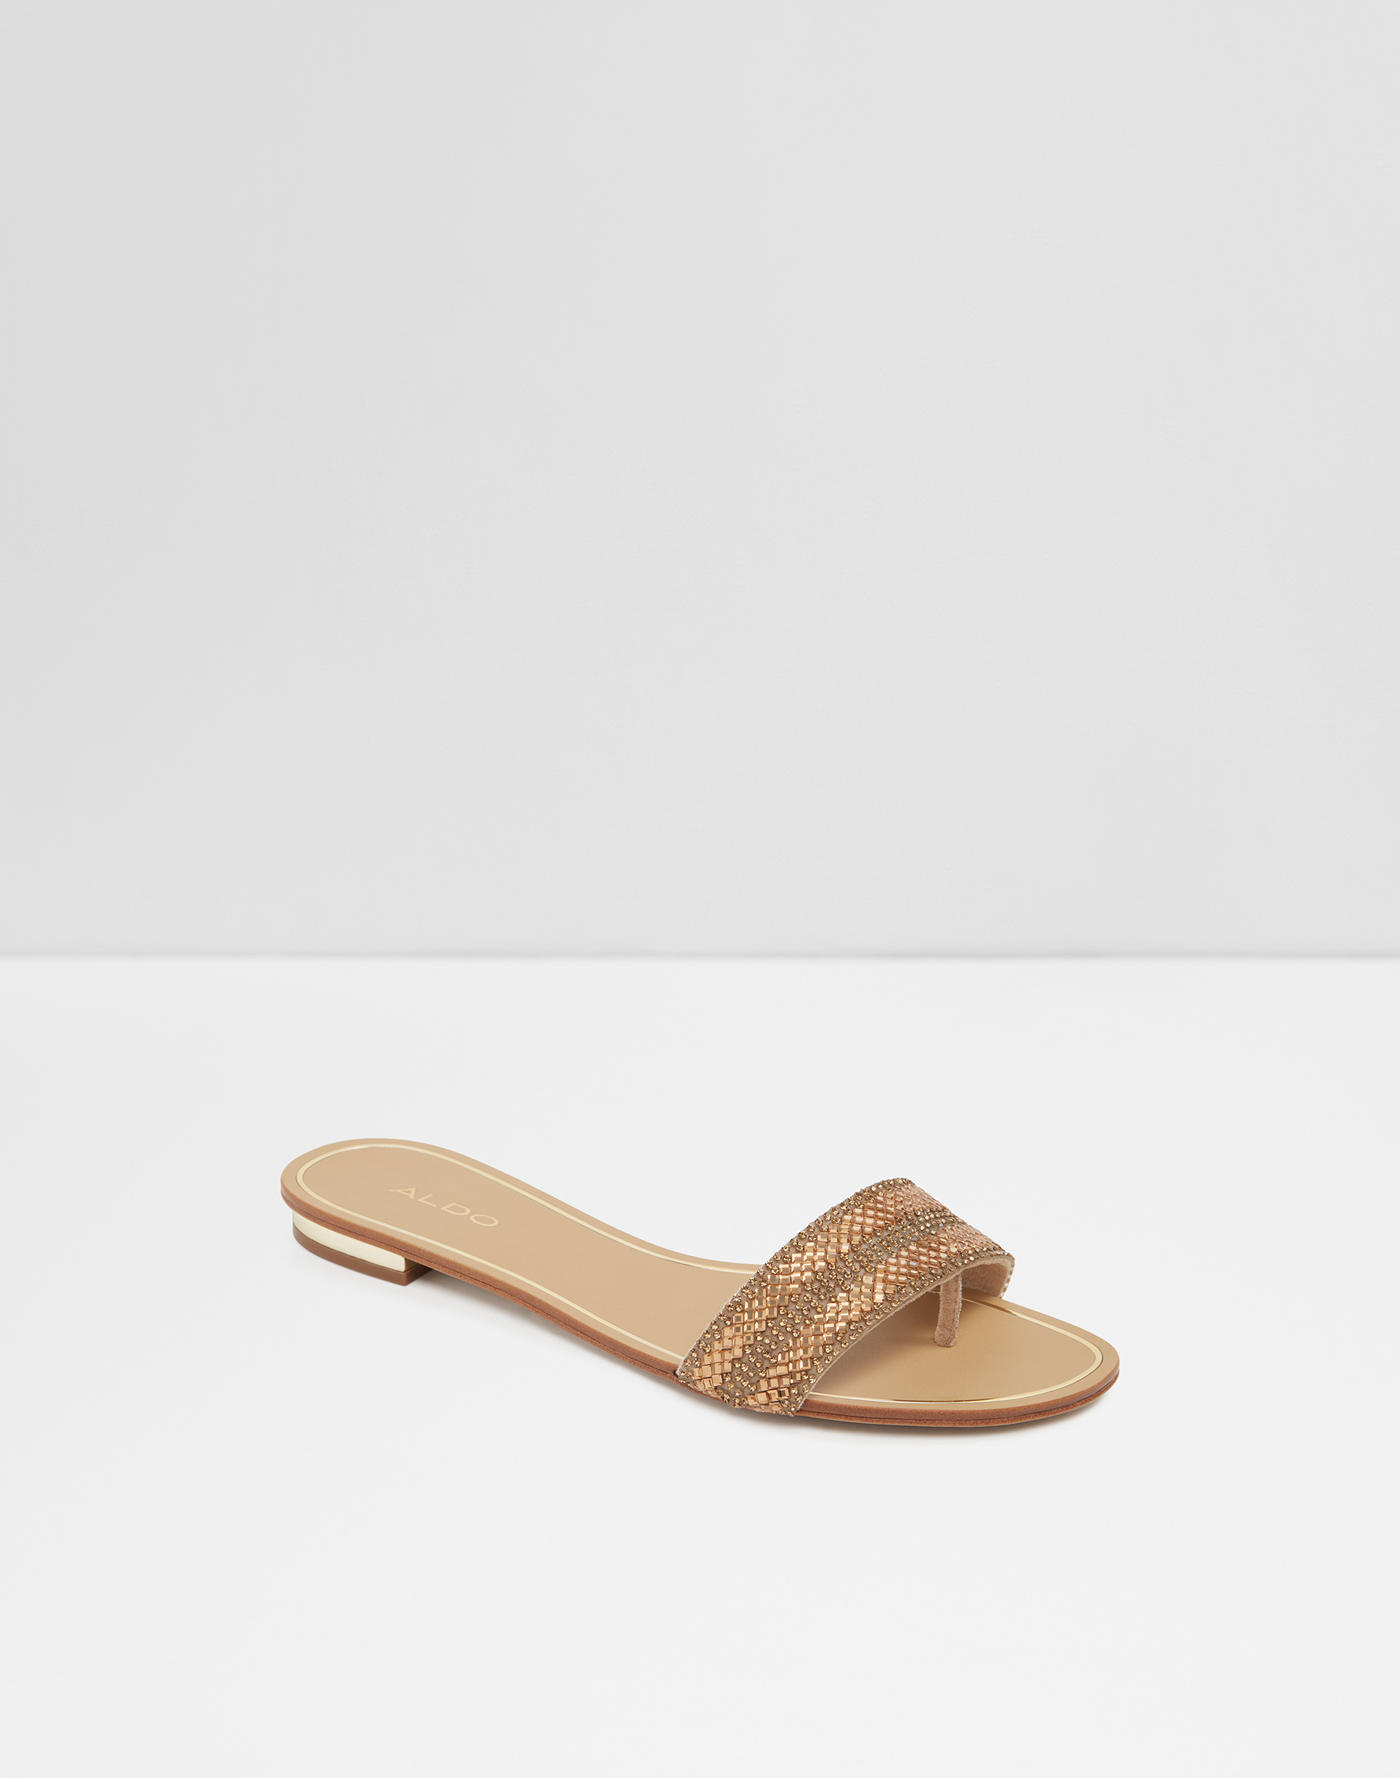 Sandals for Women | Aldoshoes.com US